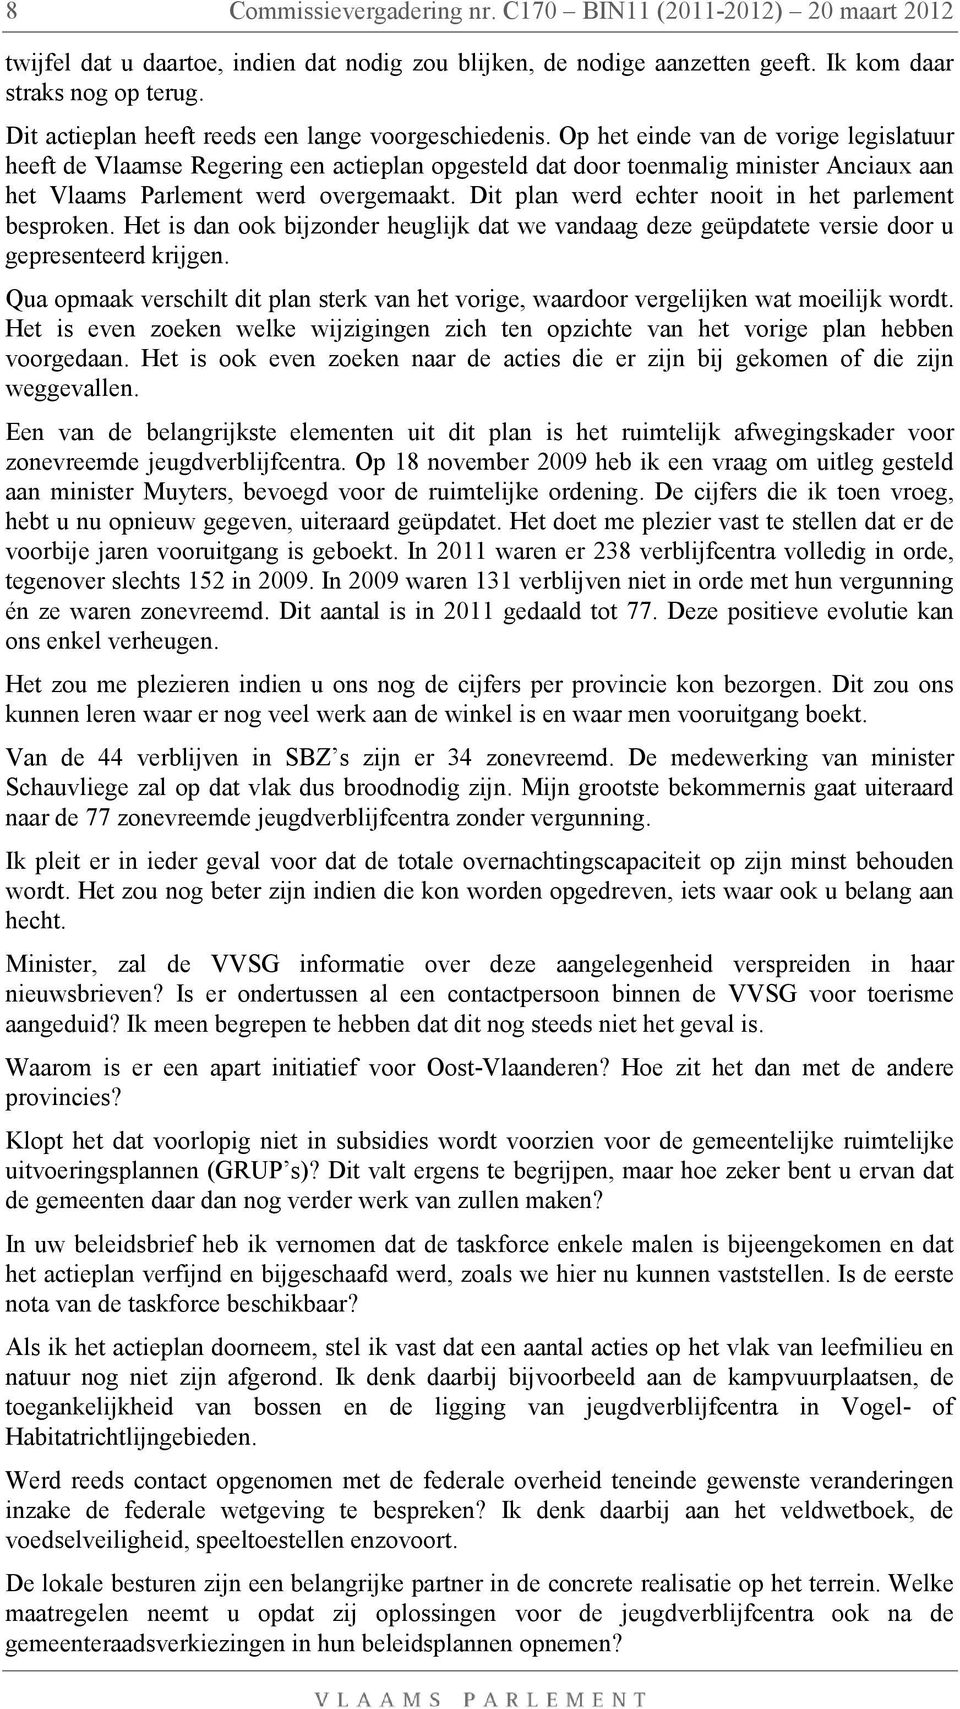 Op het einde van de vorige legislatuur heeft de Vlaamse Regering een actieplan opgesteld dat door toenmalig minister Anciaux aan het Vlaams Parlement werd overgemaakt.